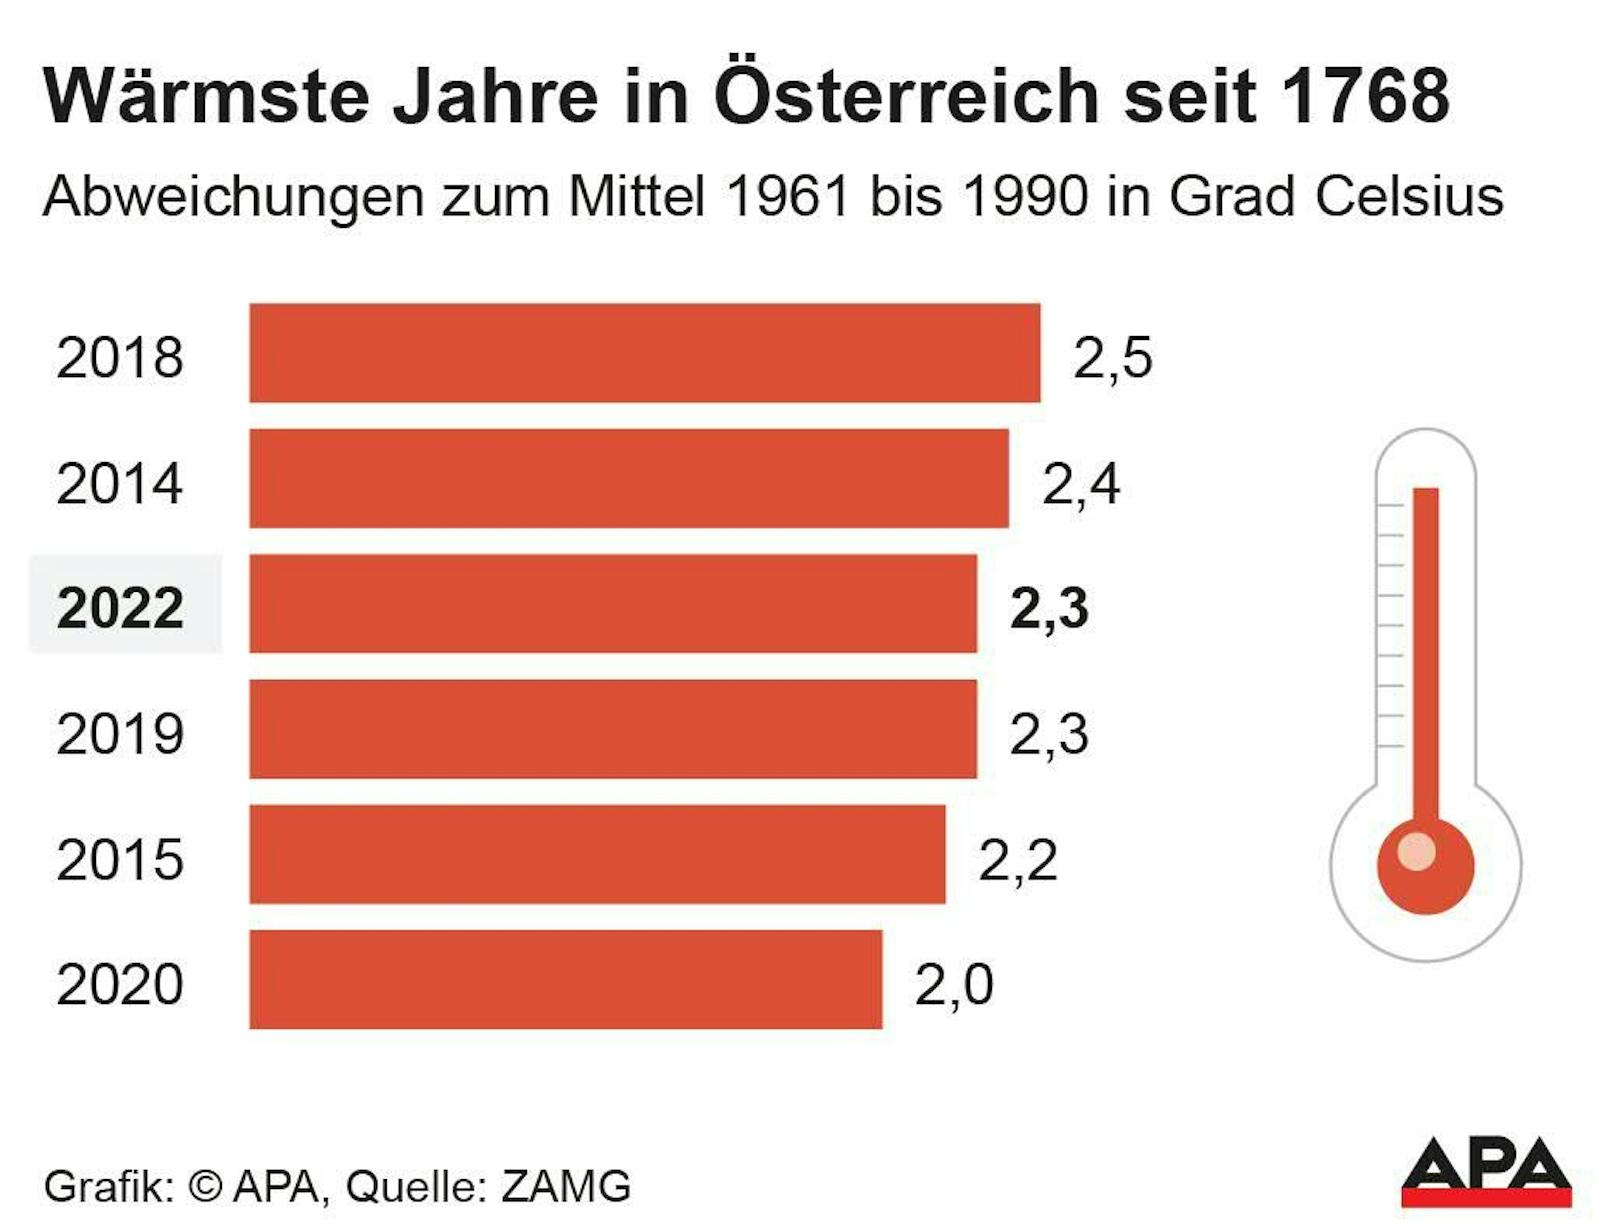 Die fünf wärmsten Jahre der österreichischen Messgeschichte. 